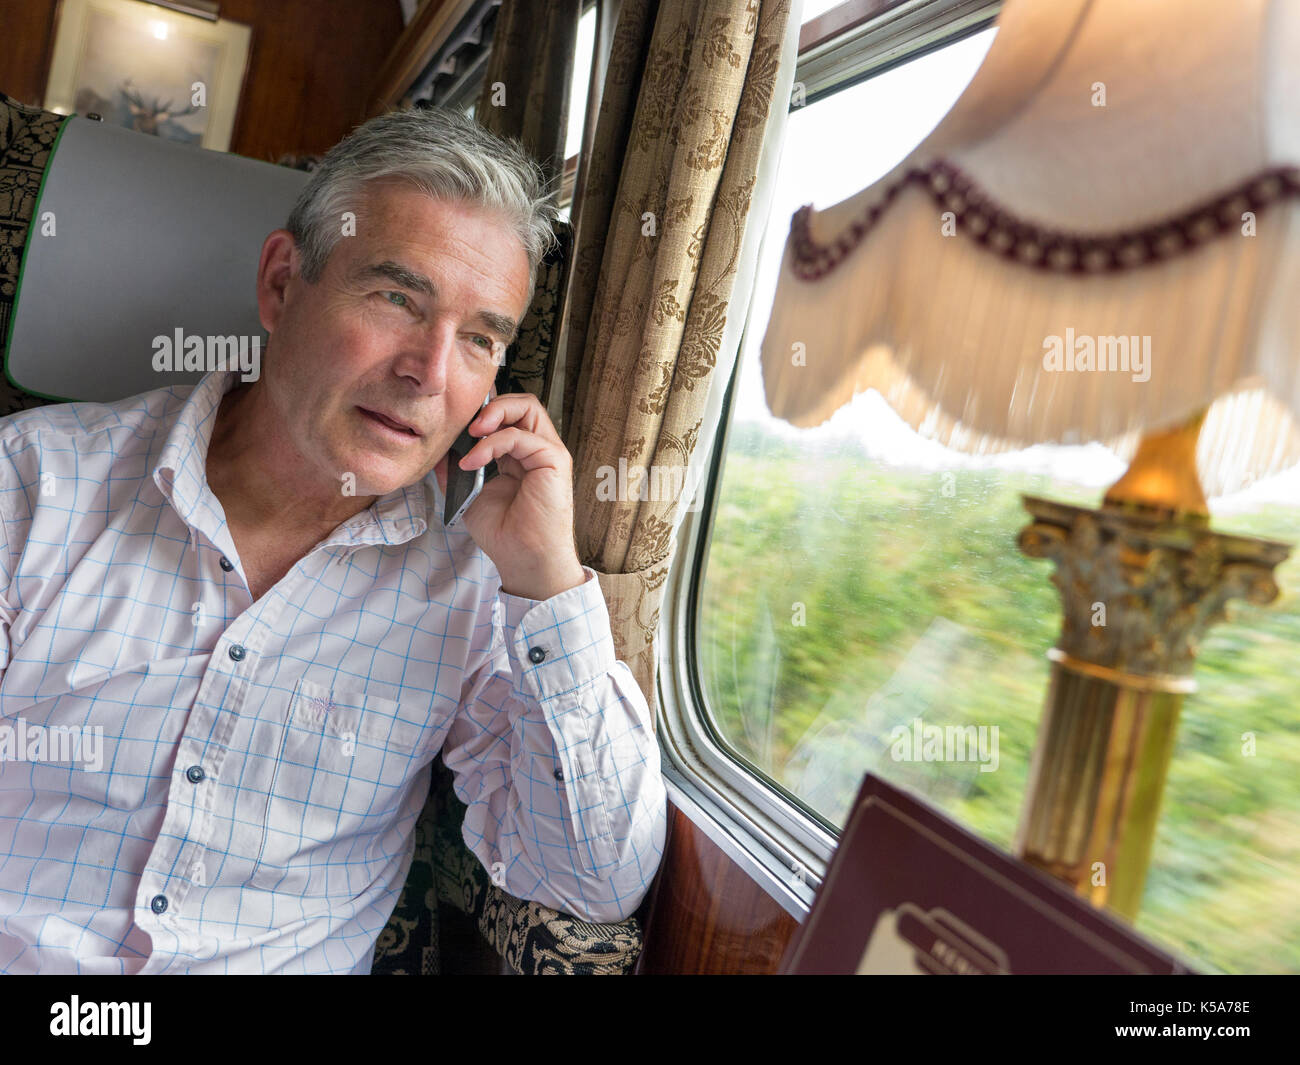 Relaxed mature man in restaurant première classe rail car parler sur son iPhone 6, bénéficiant d'un voyage en train dans un wagon Pullman vintage de luxe Banque D'Images